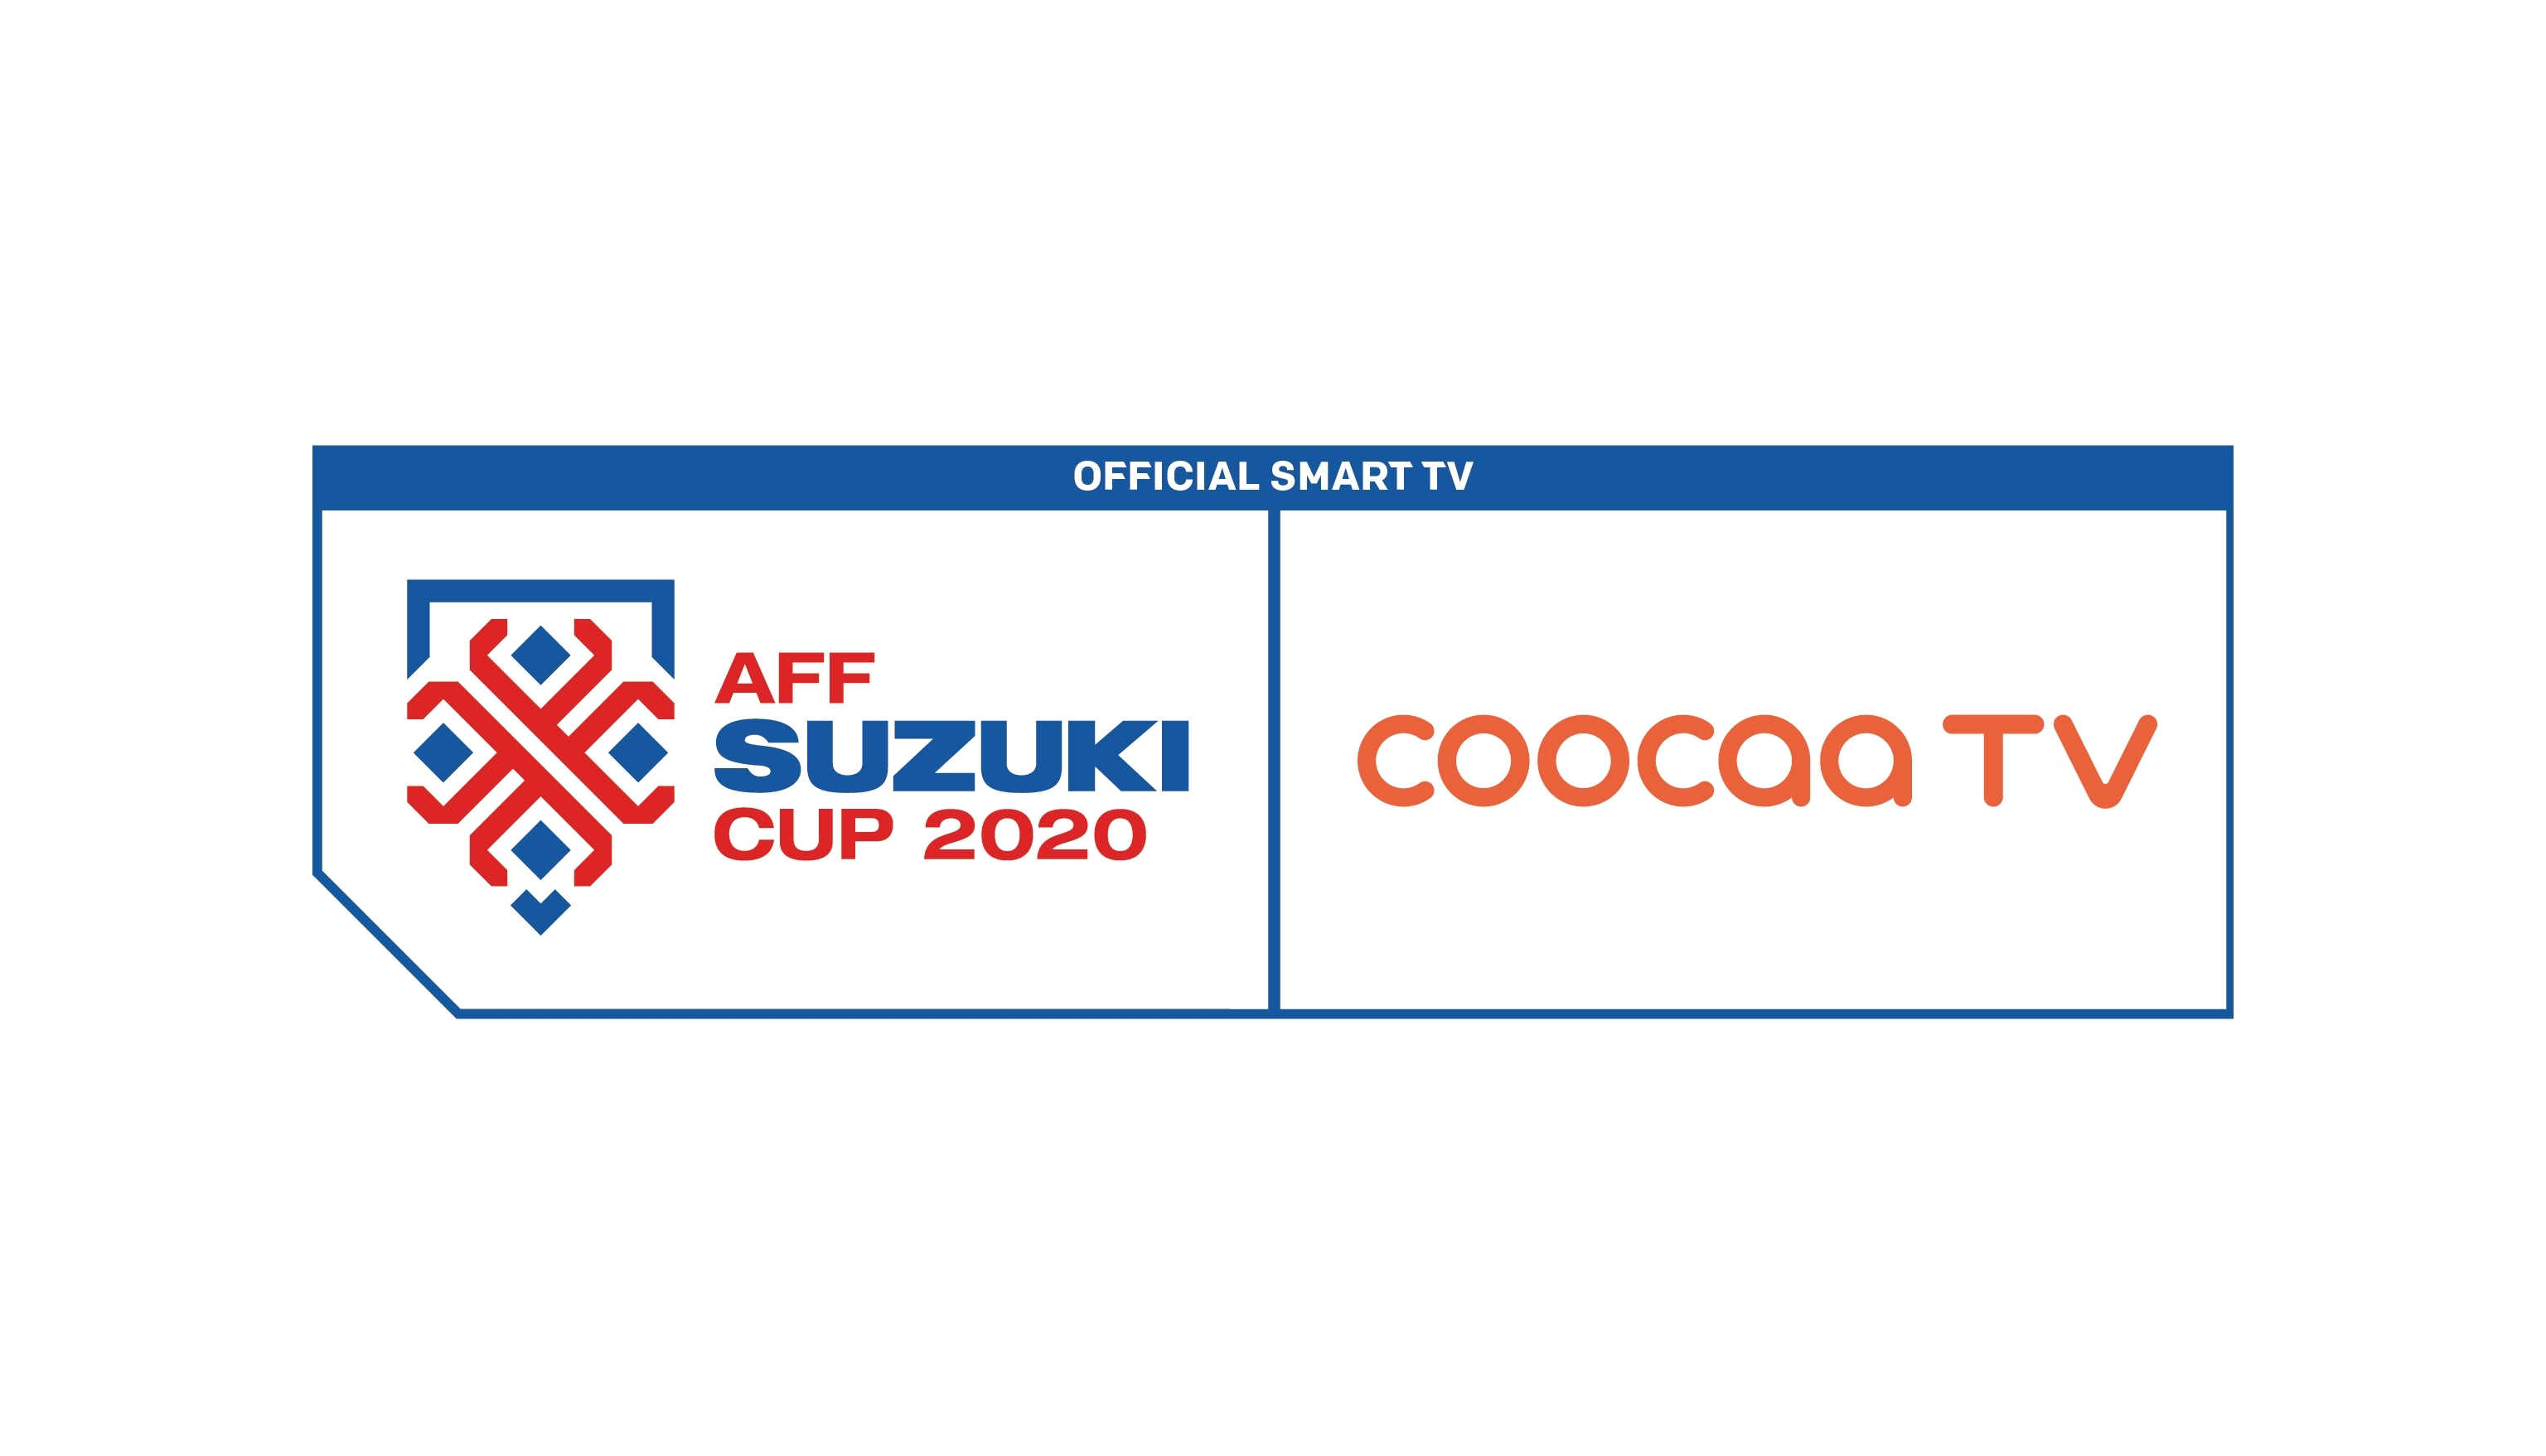 Aff suzuki cup 2020